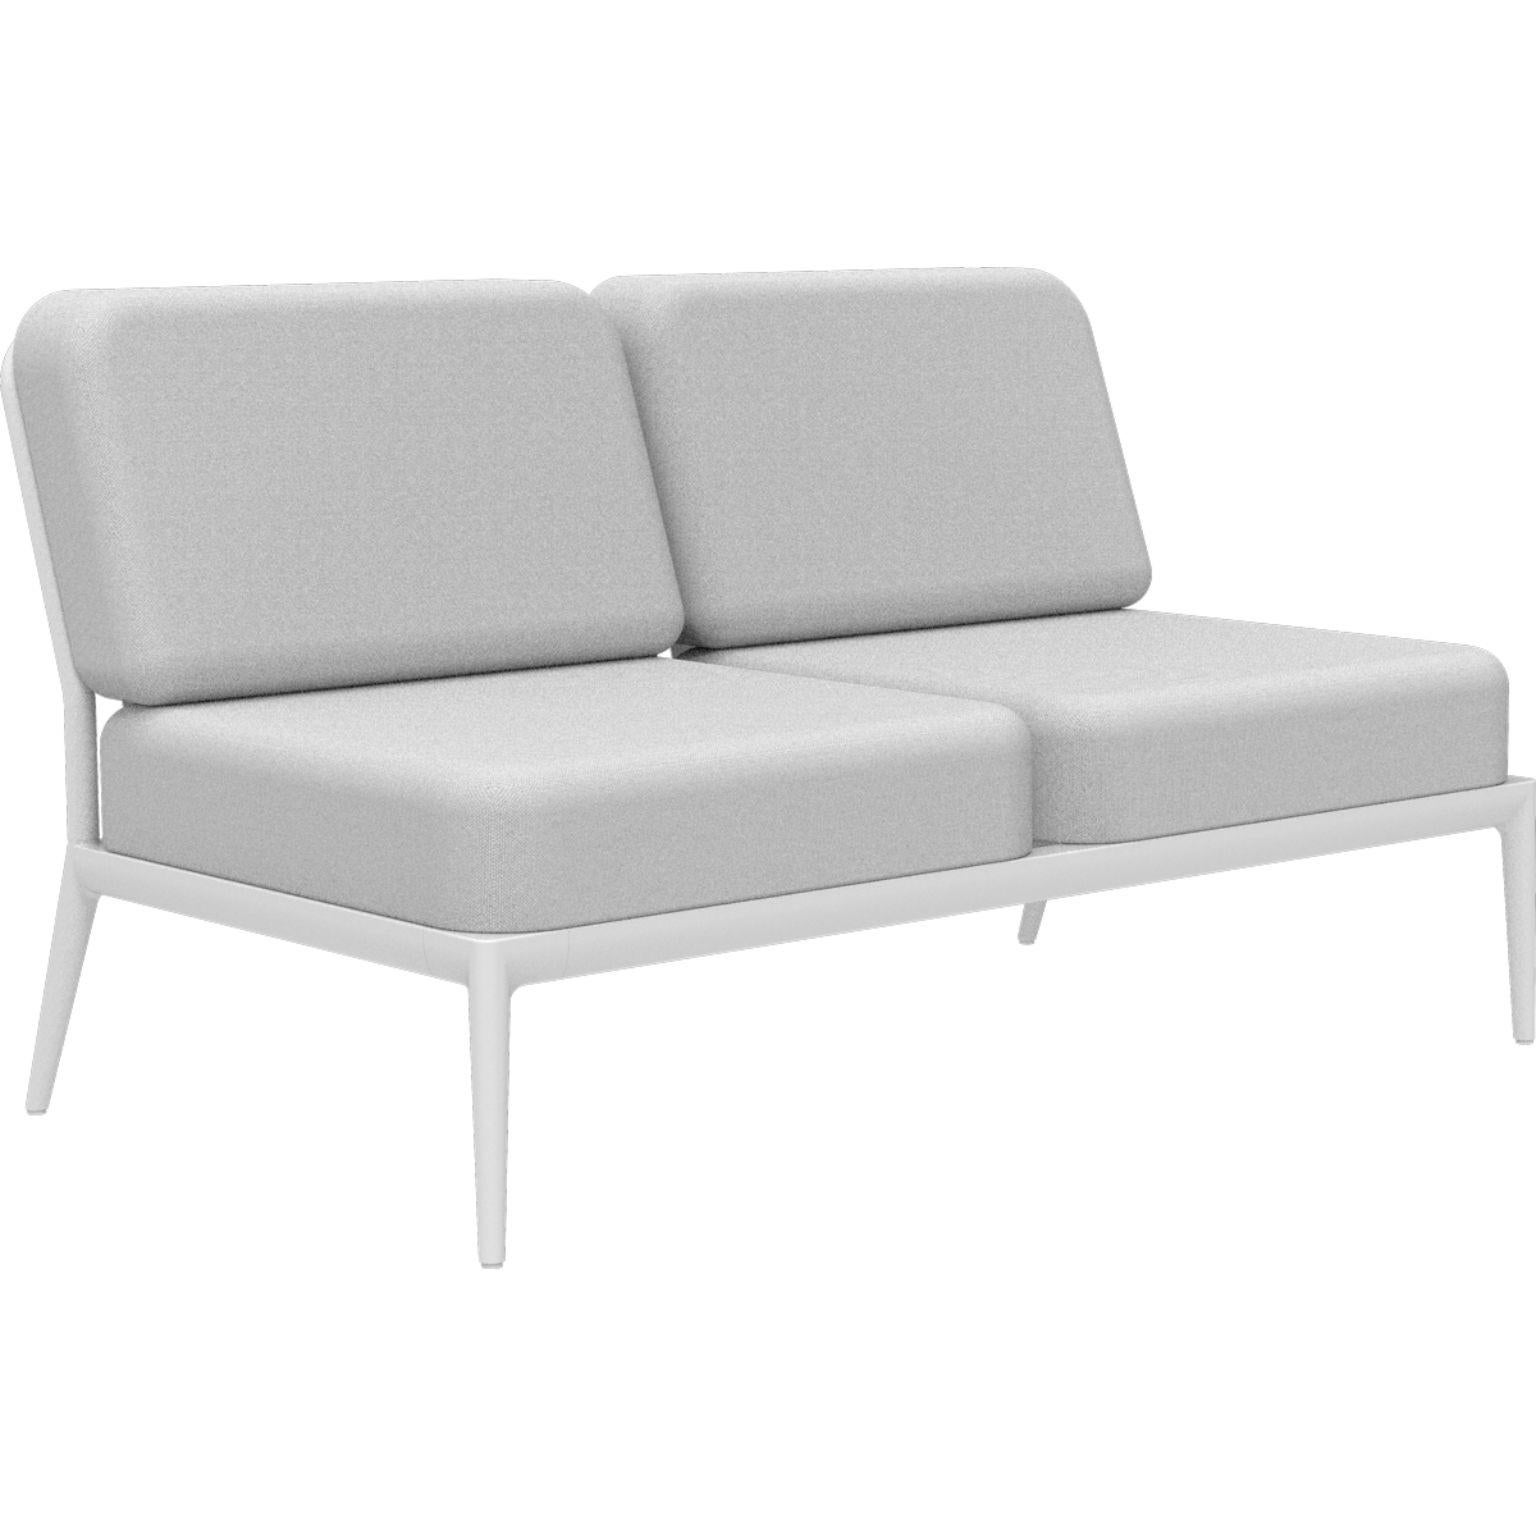 Ribbons Weißes Doppeltes zentrales modulares Sofa von MOWEE
Abmessungen: T83 x B136 x H81 cm
MATERIAL: Aluminium, und Polsterung.
Gewicht: 27 kg.
Auch in verschiedenen Farben und Ausführungen erhältlich.

Eine Collection'S, die durch ihre Schönheit